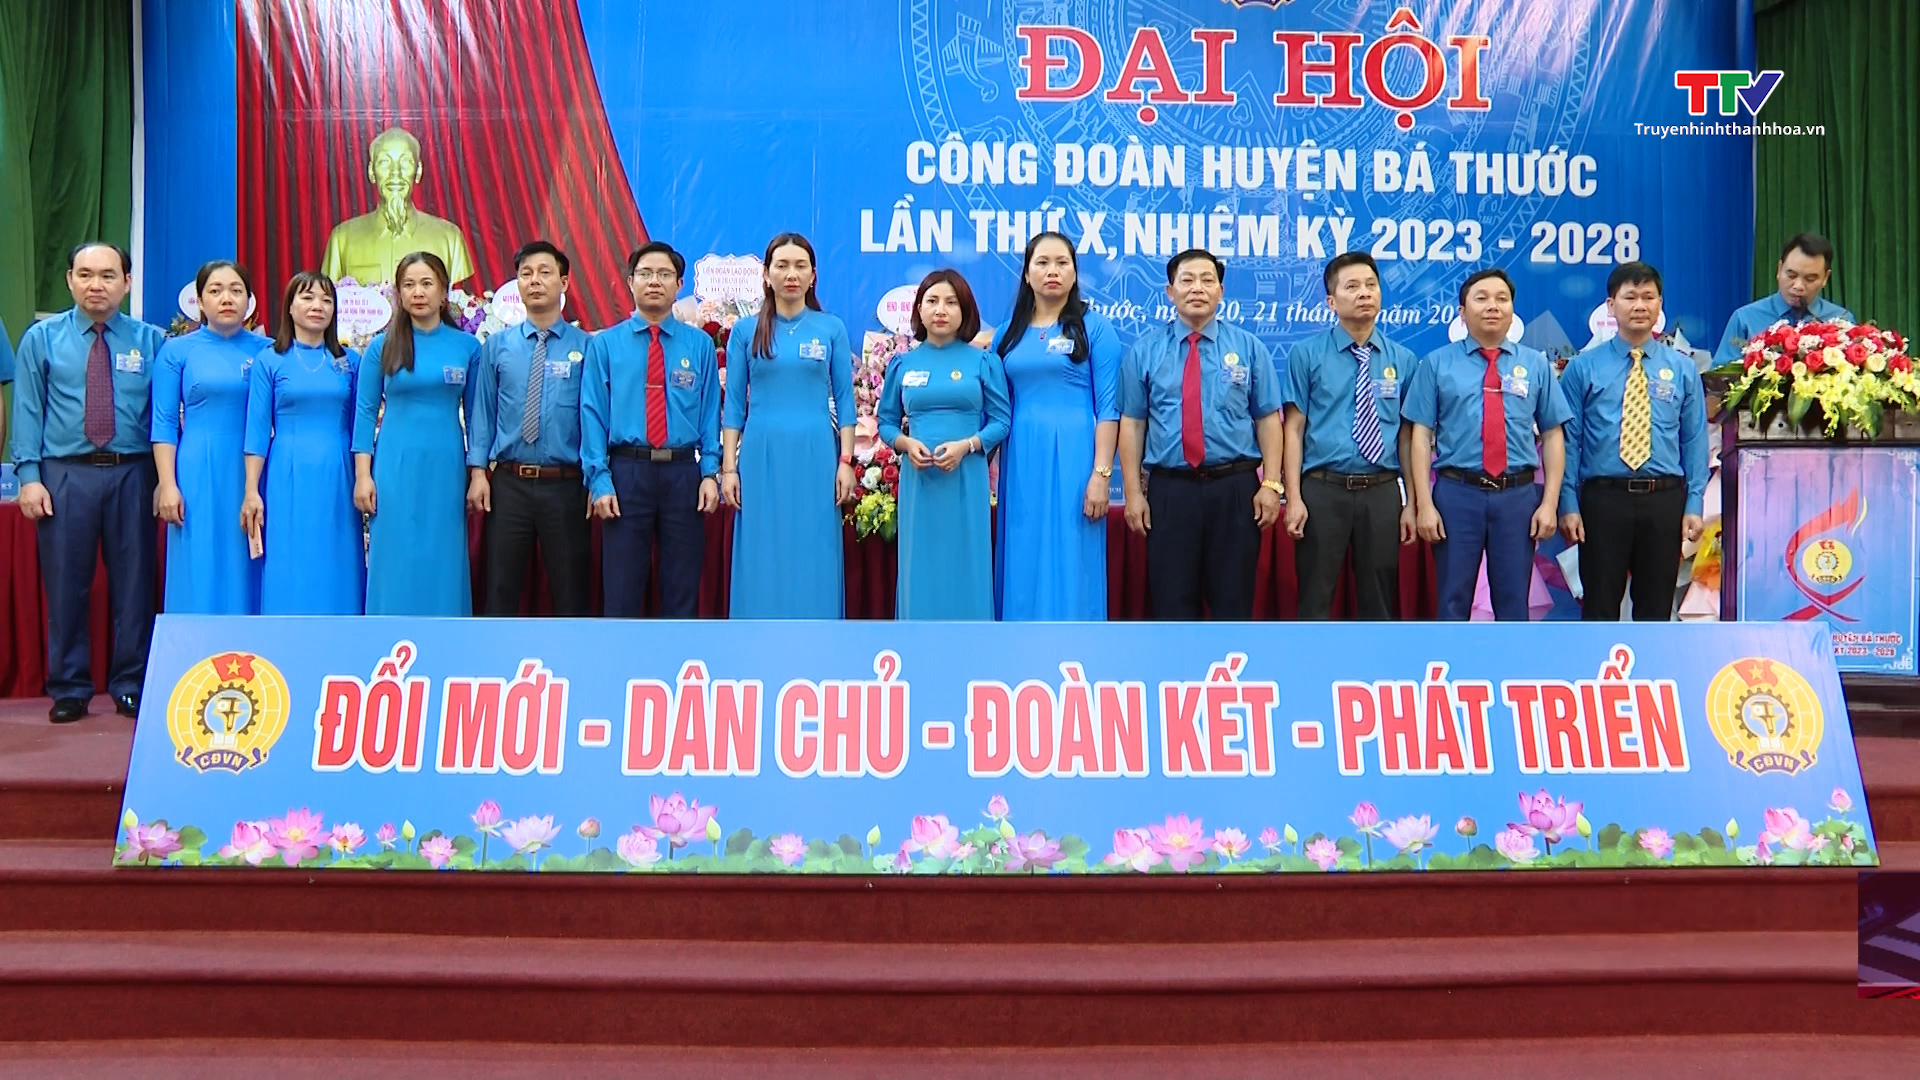 Đại hội công đoàn huyện Bá Thước lần thứ X, nhiệm kỳ 2023-2028 - Ảnh 2.